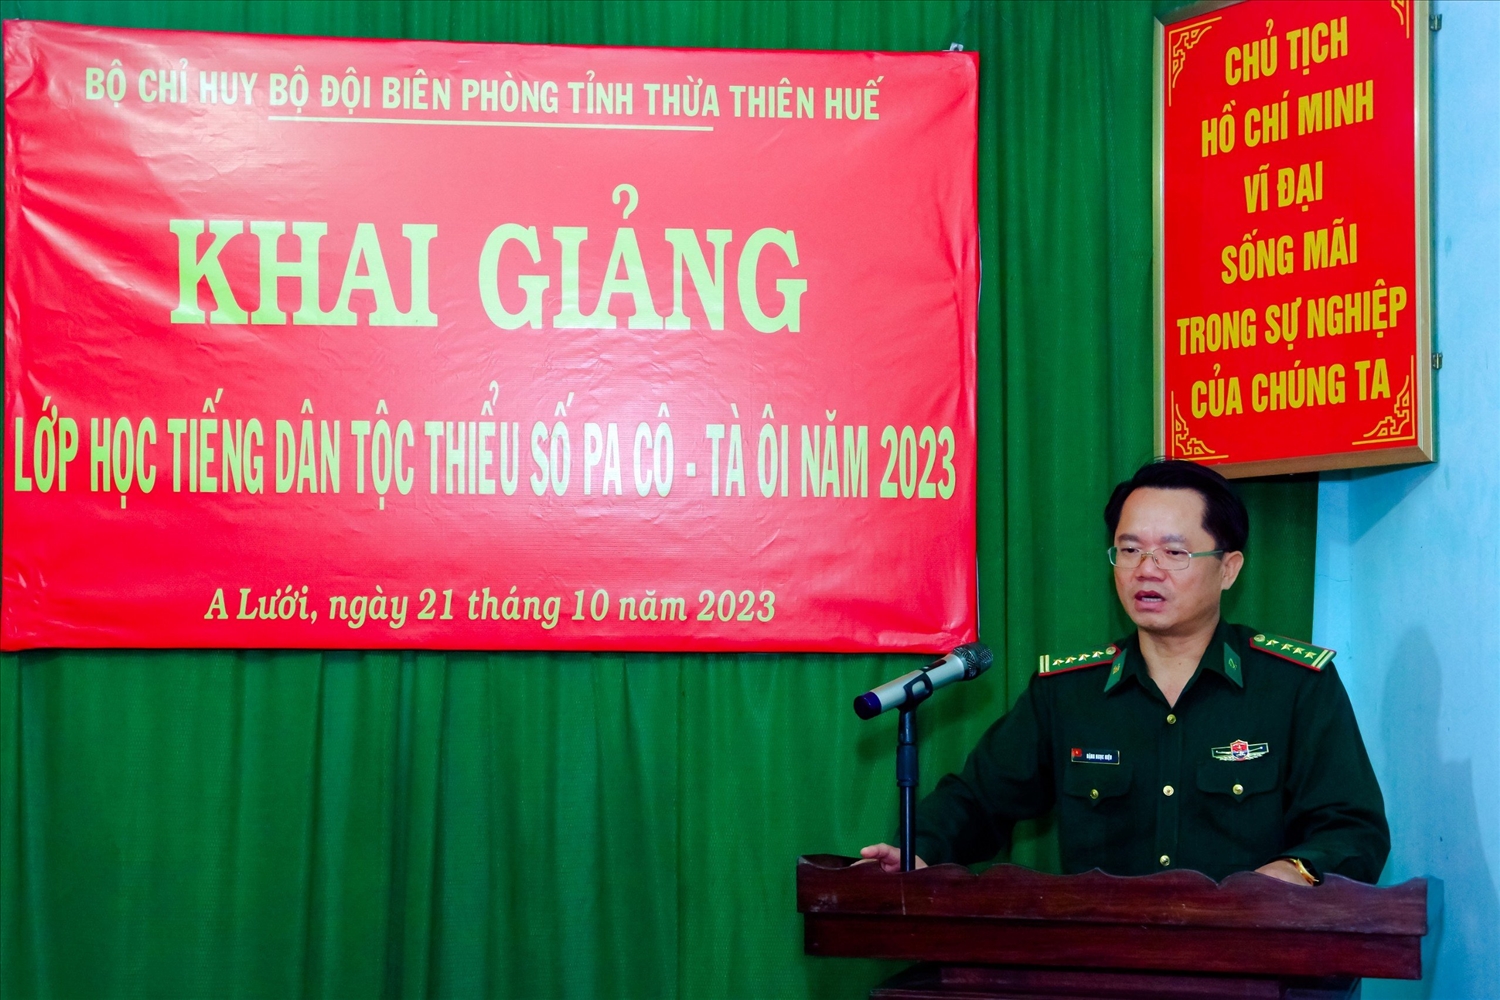 Đại tá Đặng Ngọc Hiệu phát biểu chỉ đạo tại khai mạc lớp học tiếng dân tộc. 